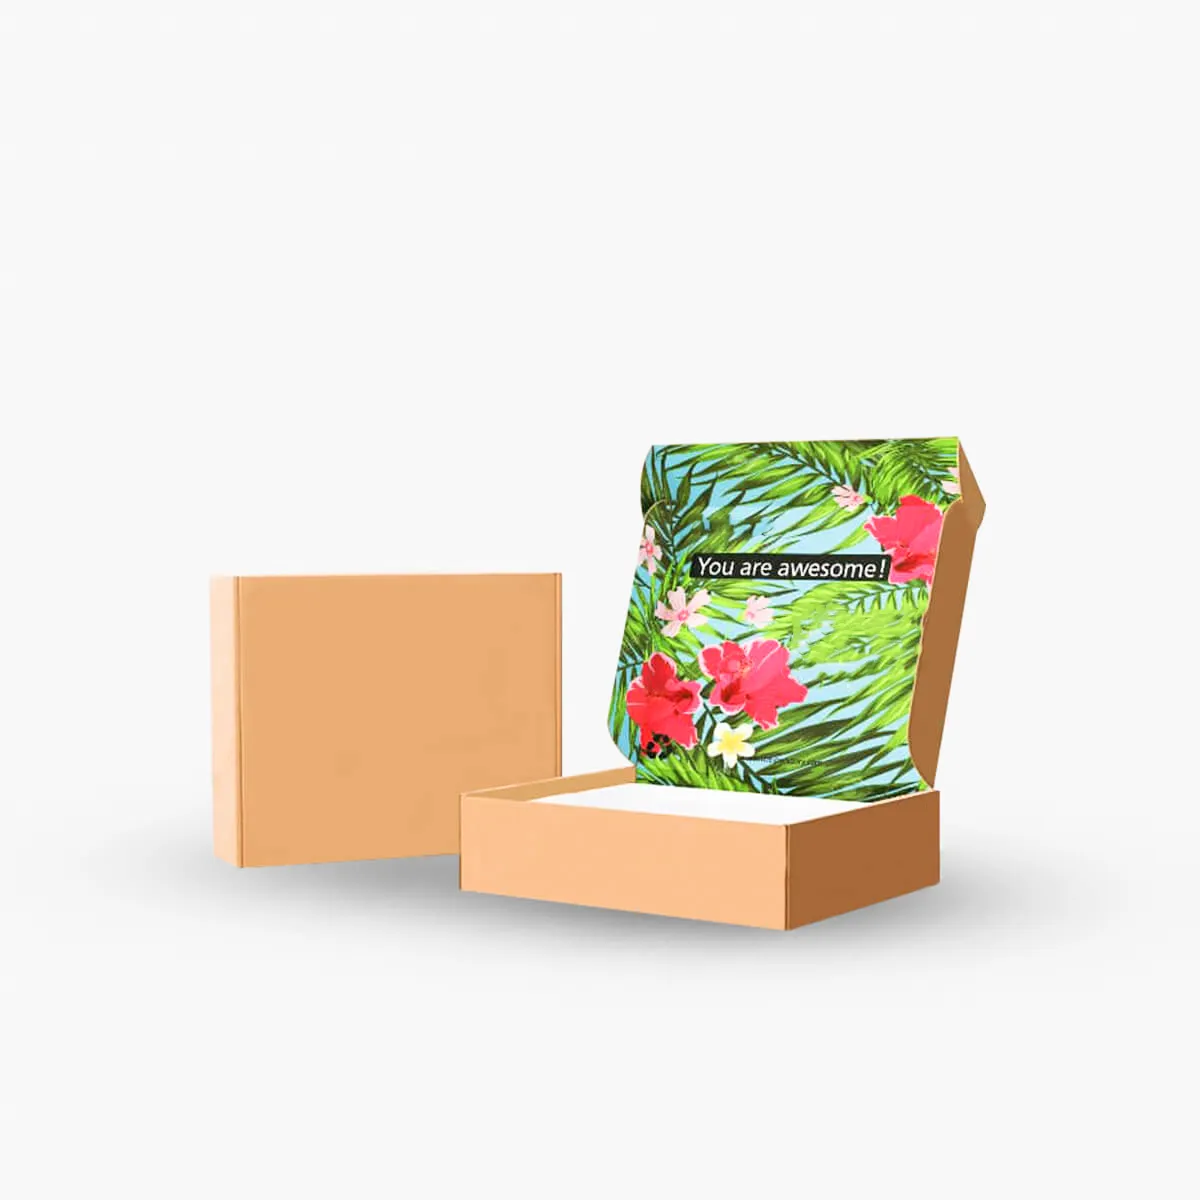 Personal isierter Großhandels preis Marken blumen versand Schöne Schachteln Wellpappe Papier verpackung Mailer Box